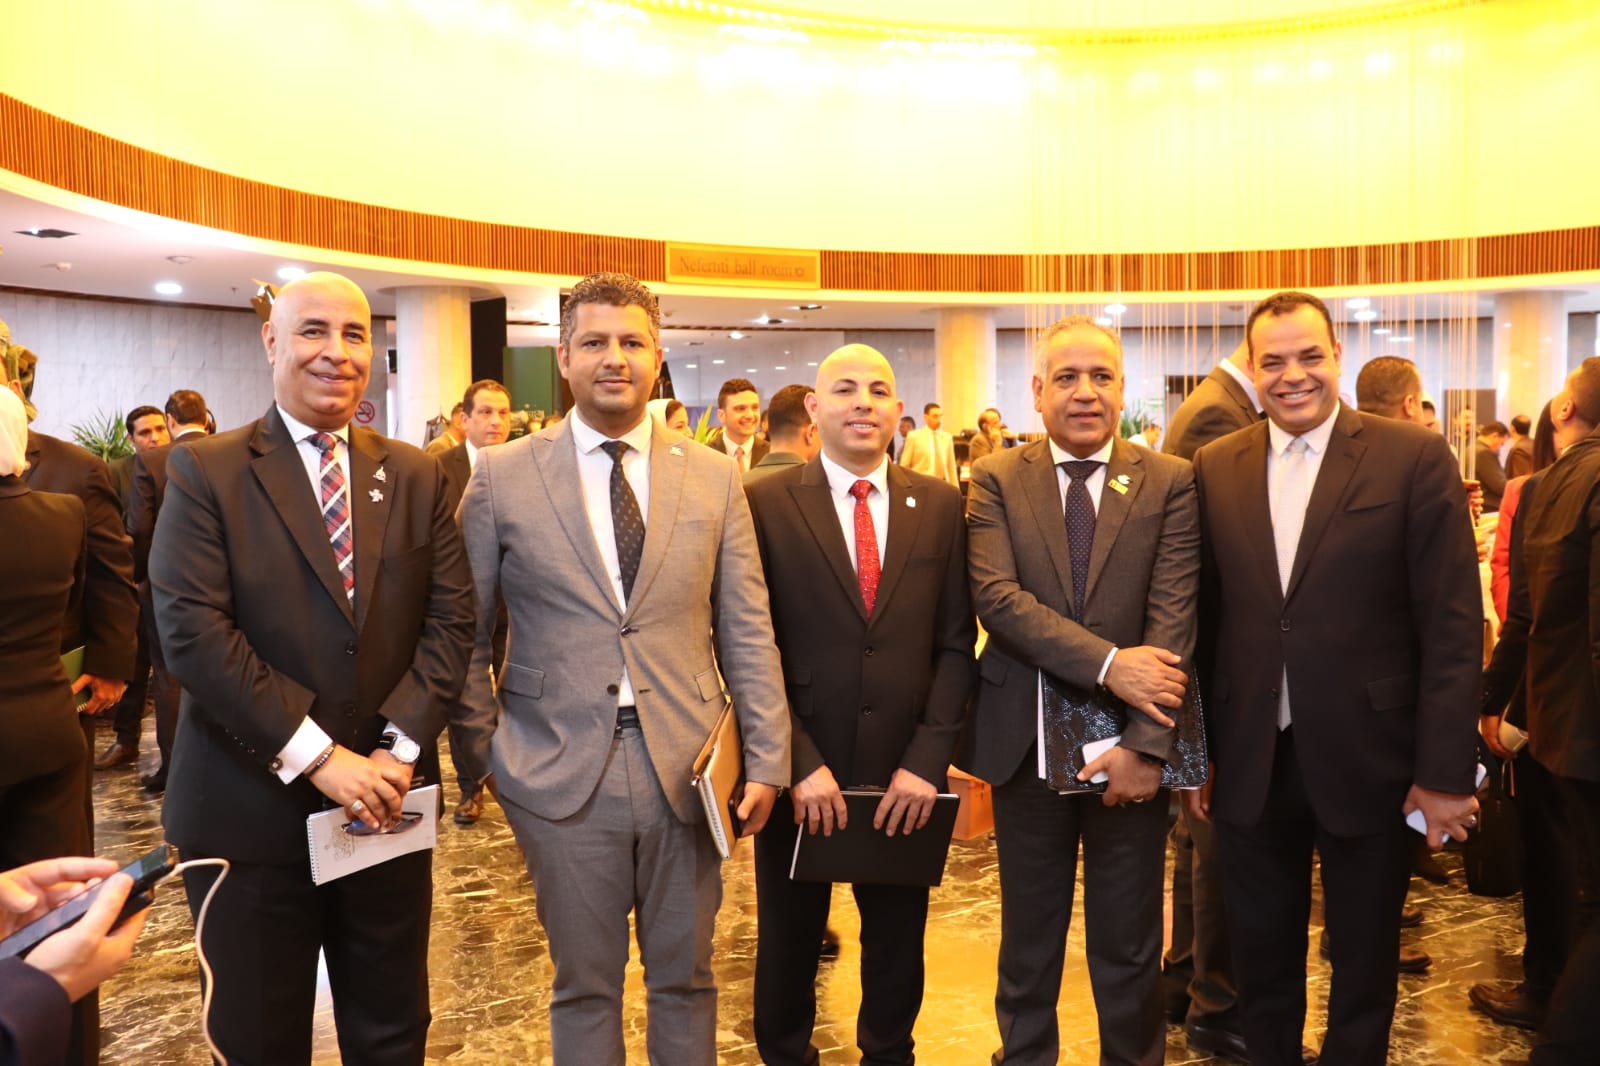 رئيس مجلس إدارة مجمع عمال مصر يشارك بجلسة لجنة الصناعة بالحوار الوطني 